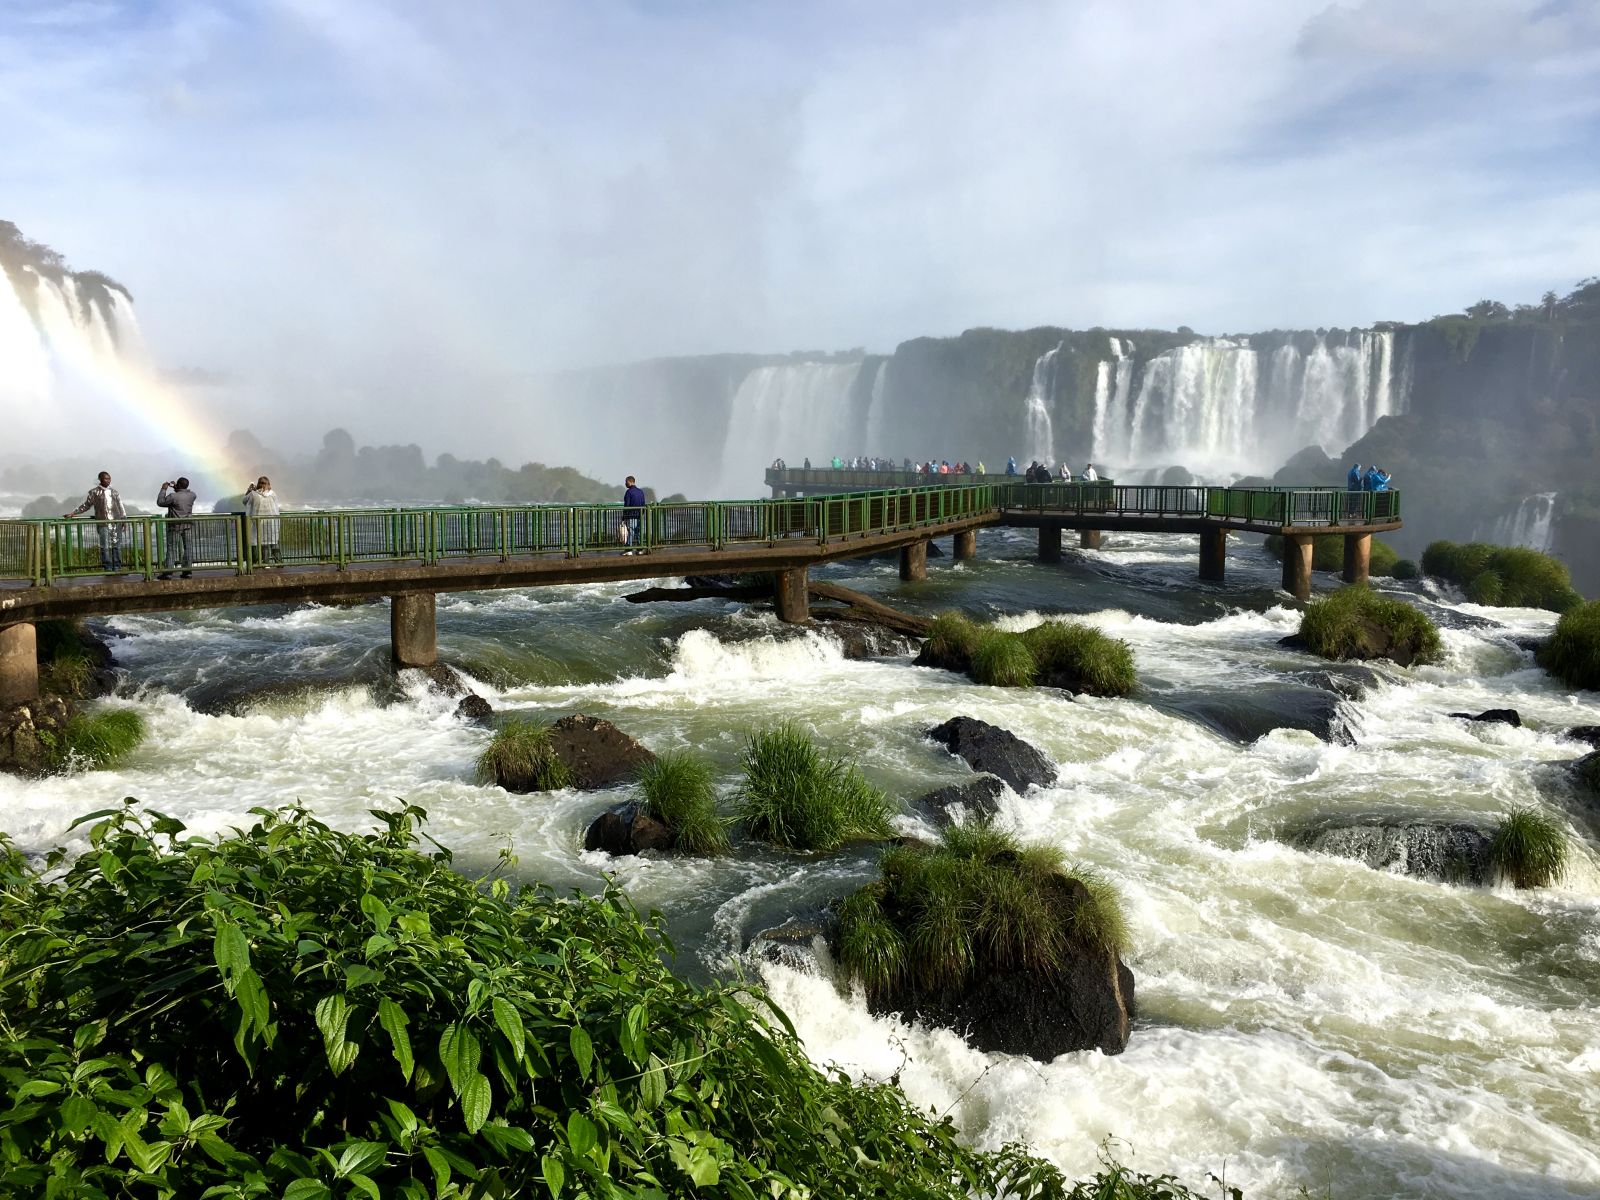  Cataratas do Iguaçu (Thác nước Iguacu)